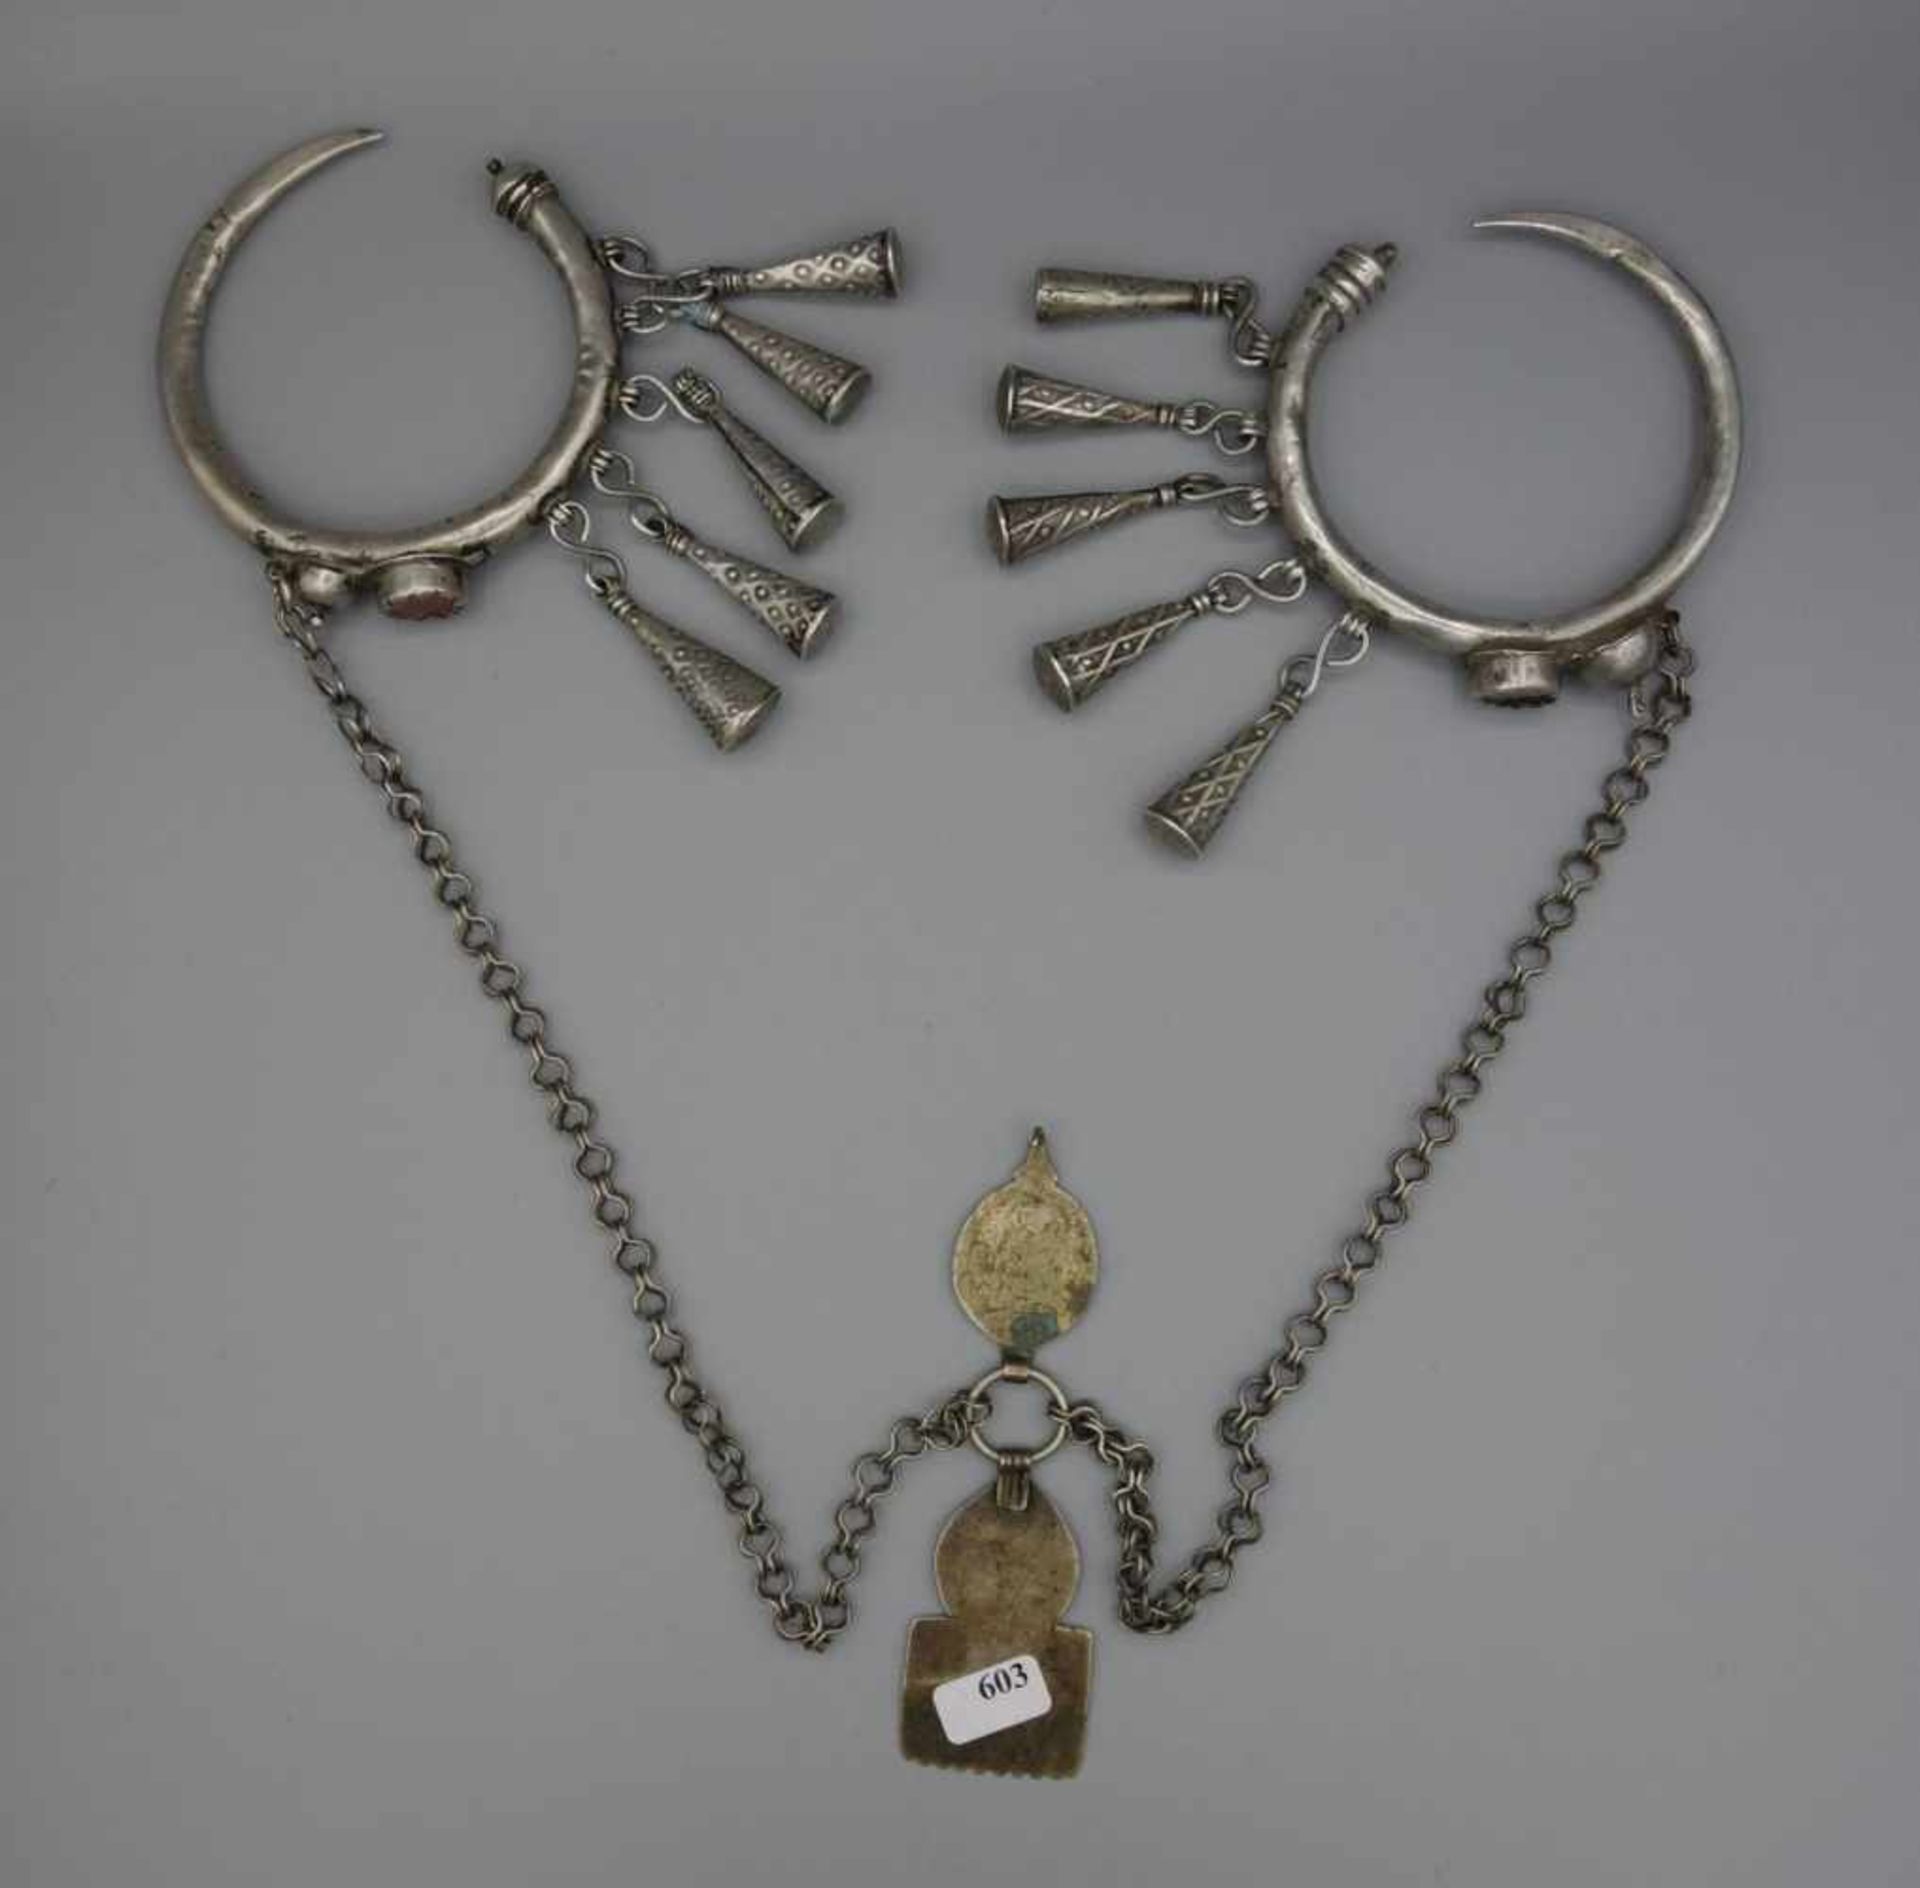 BERBER-SCHMUCK: FIBELN UND KETTE, Marokko. Silber, Gewicht: 145 g. Kette mit Fibeln. In der Mitte - Bild 3 aus 3